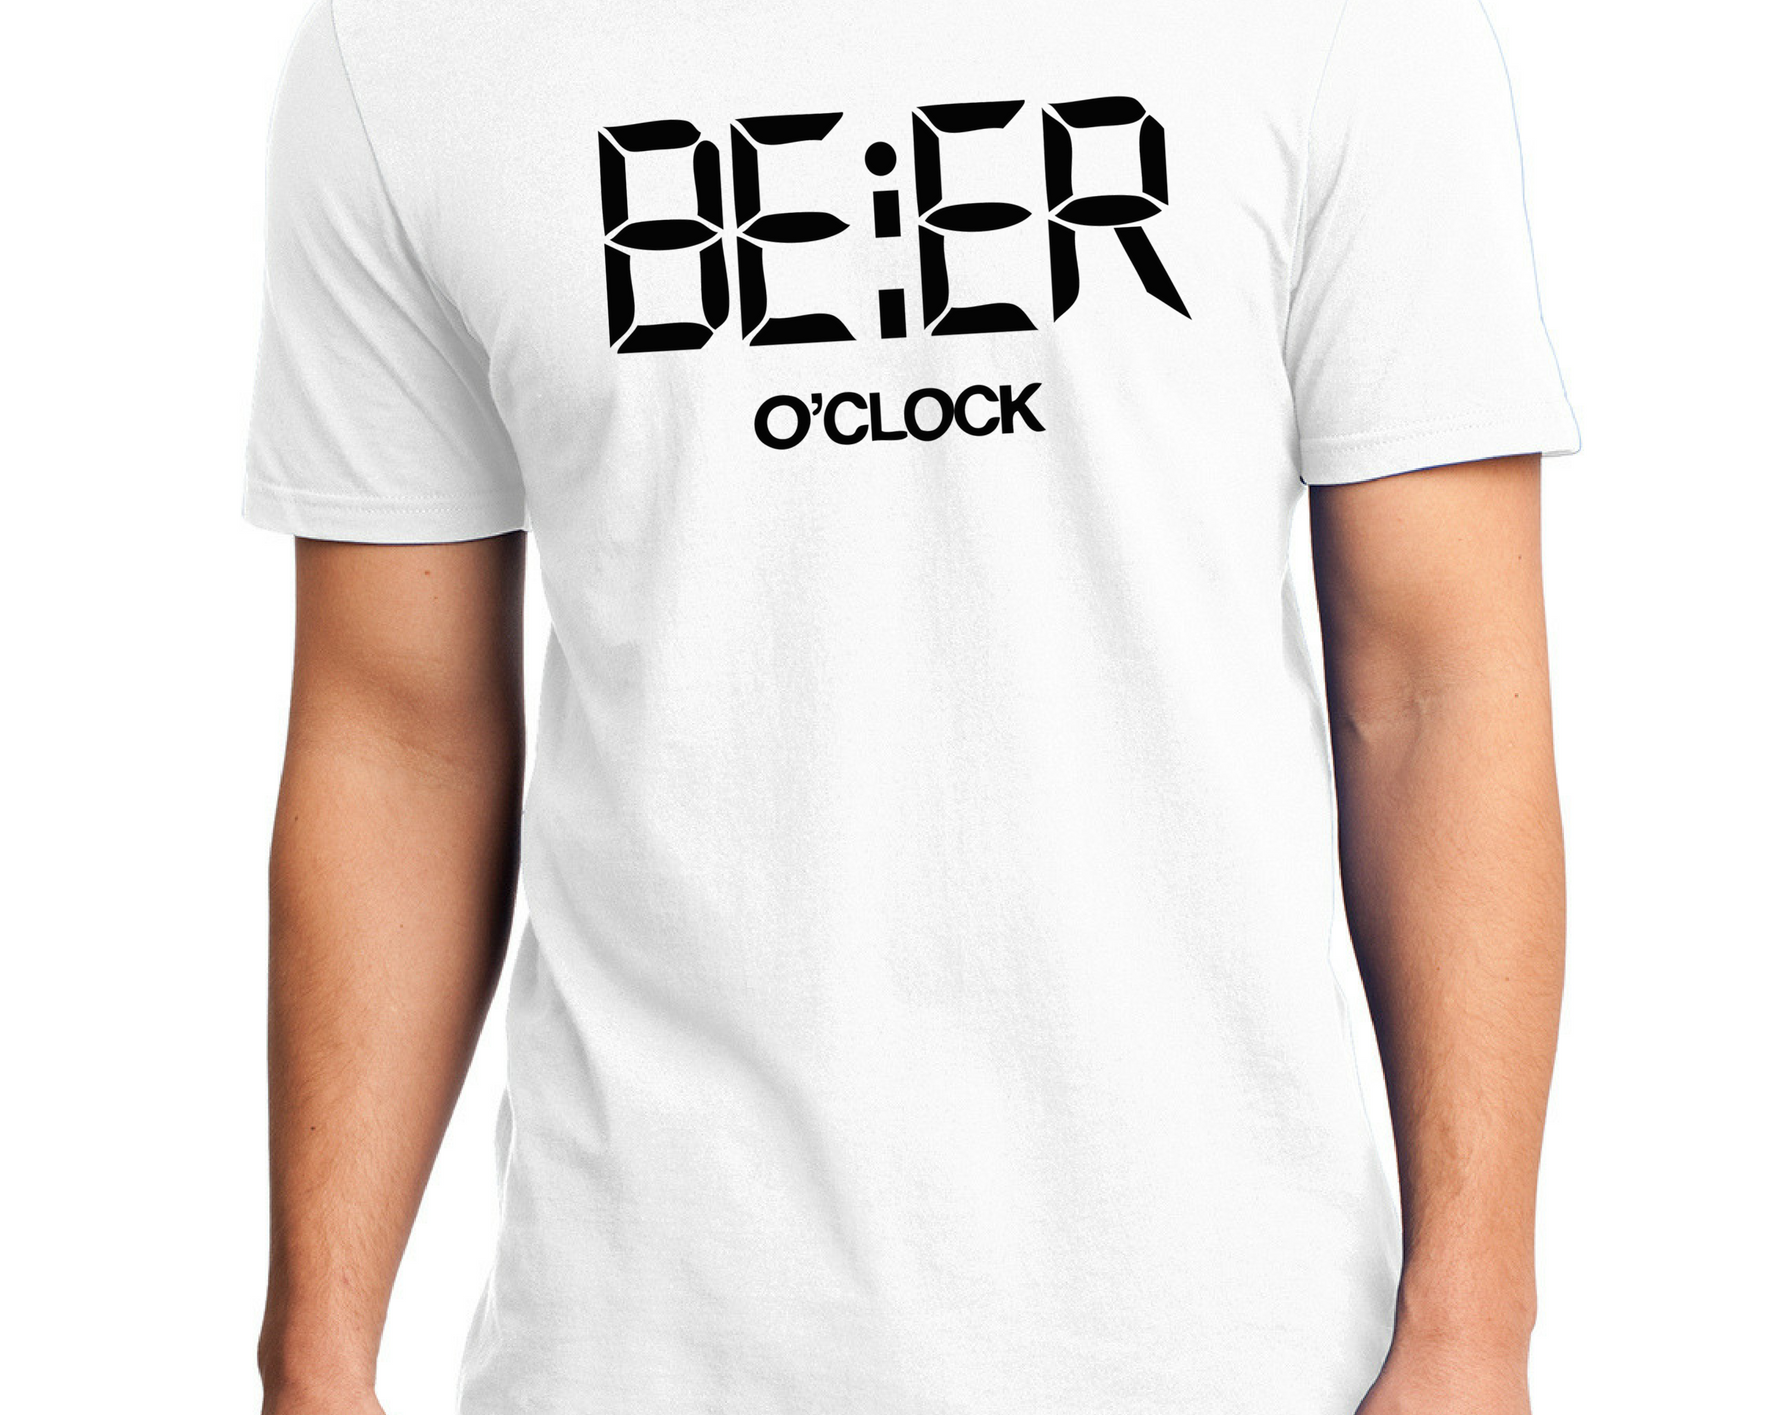 BEER O CLOCK Reactr Tshirts For Men - Eyewearlabs